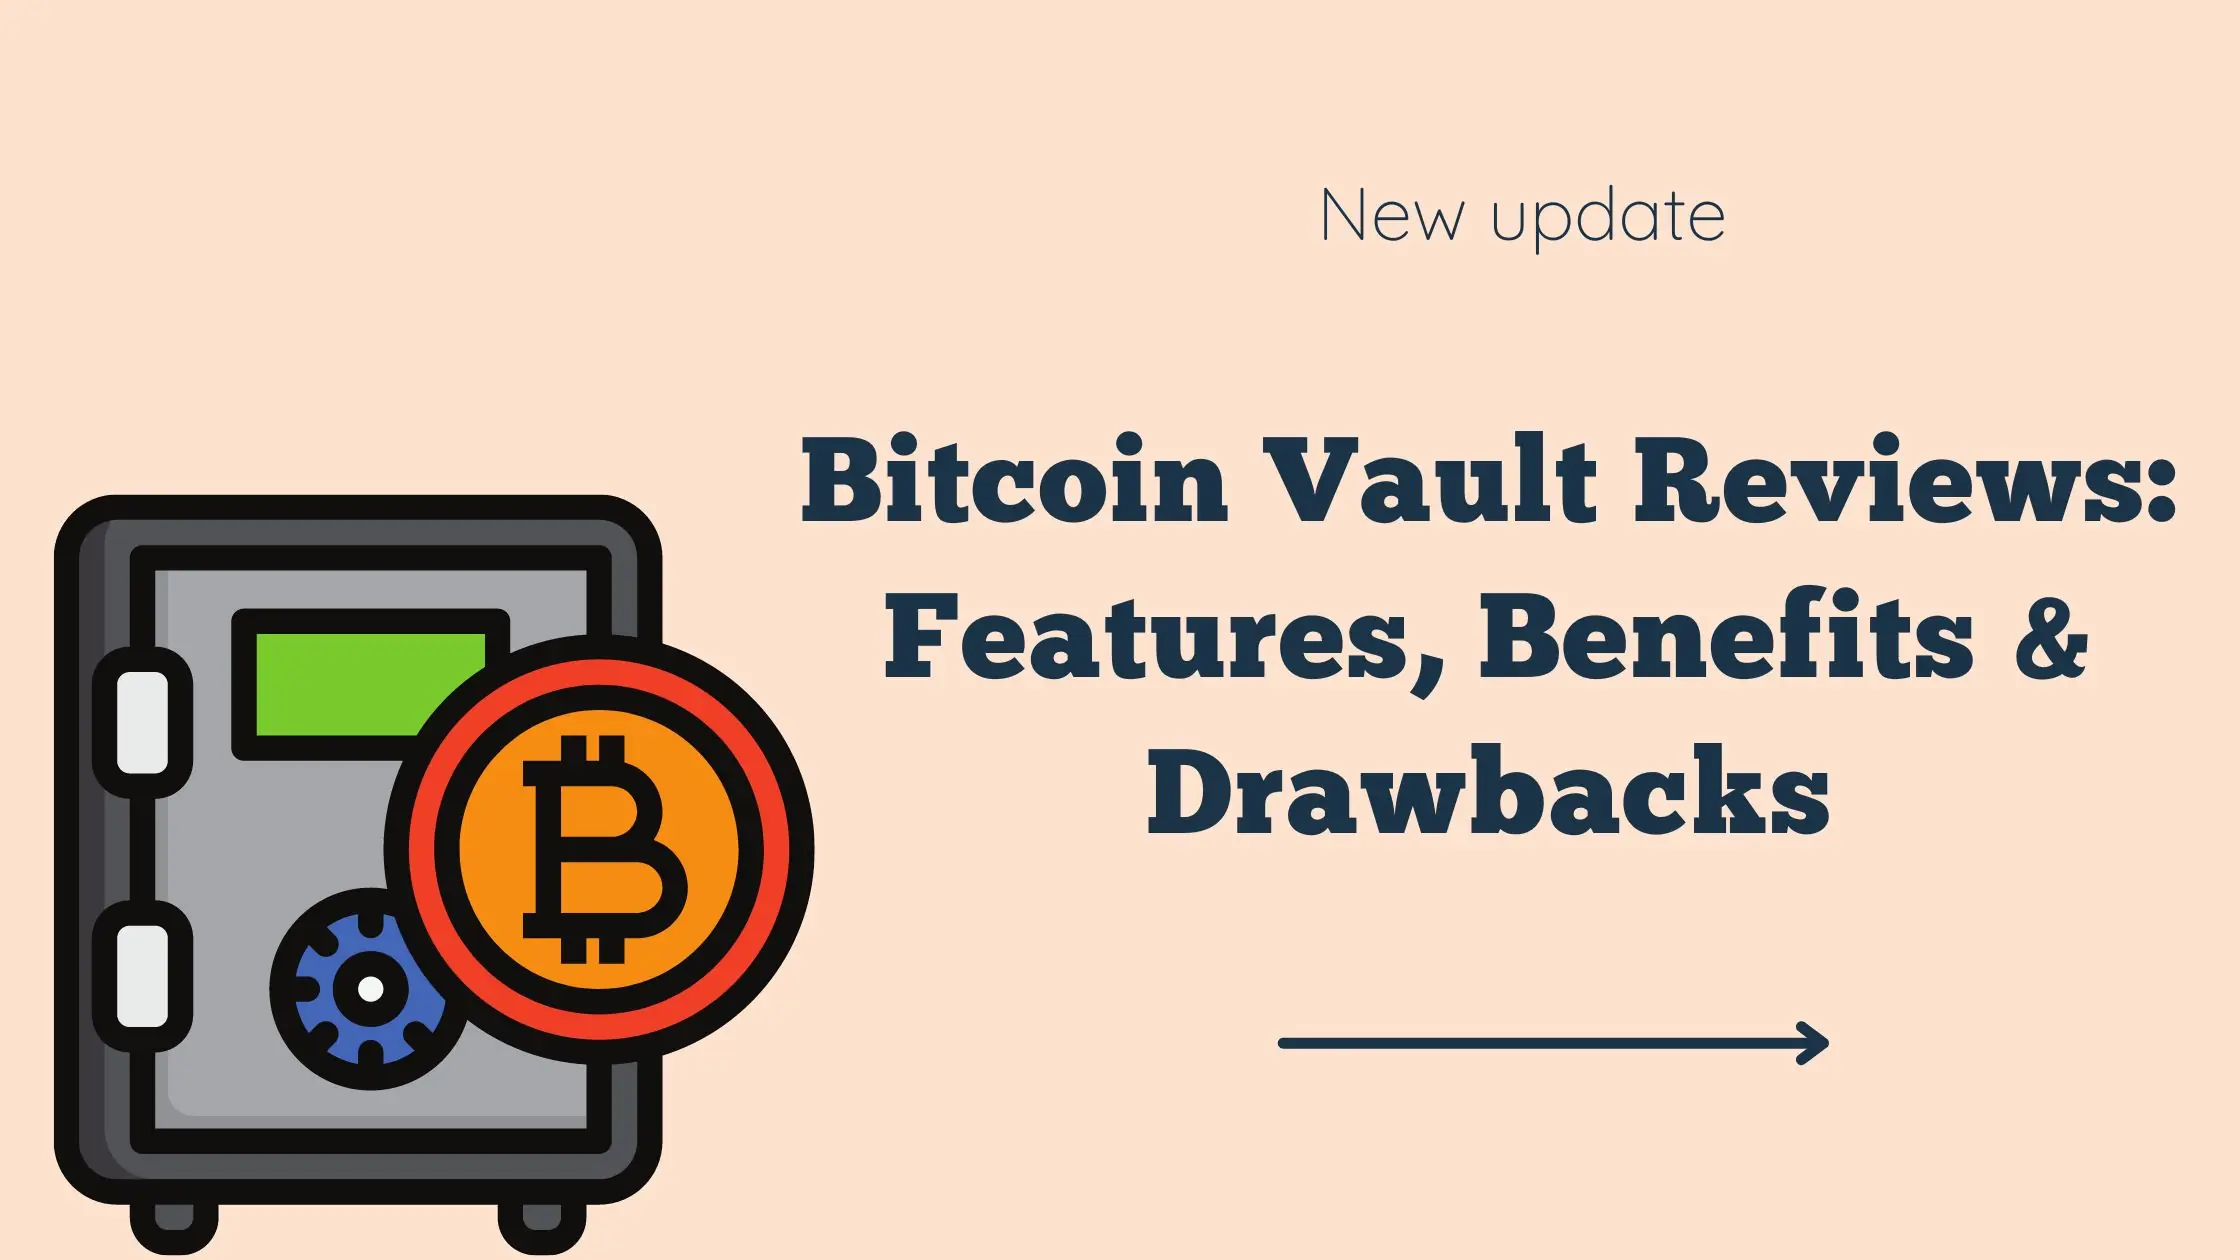 Bitcoin Vault Reviews Features, Benefits & Drawbacks